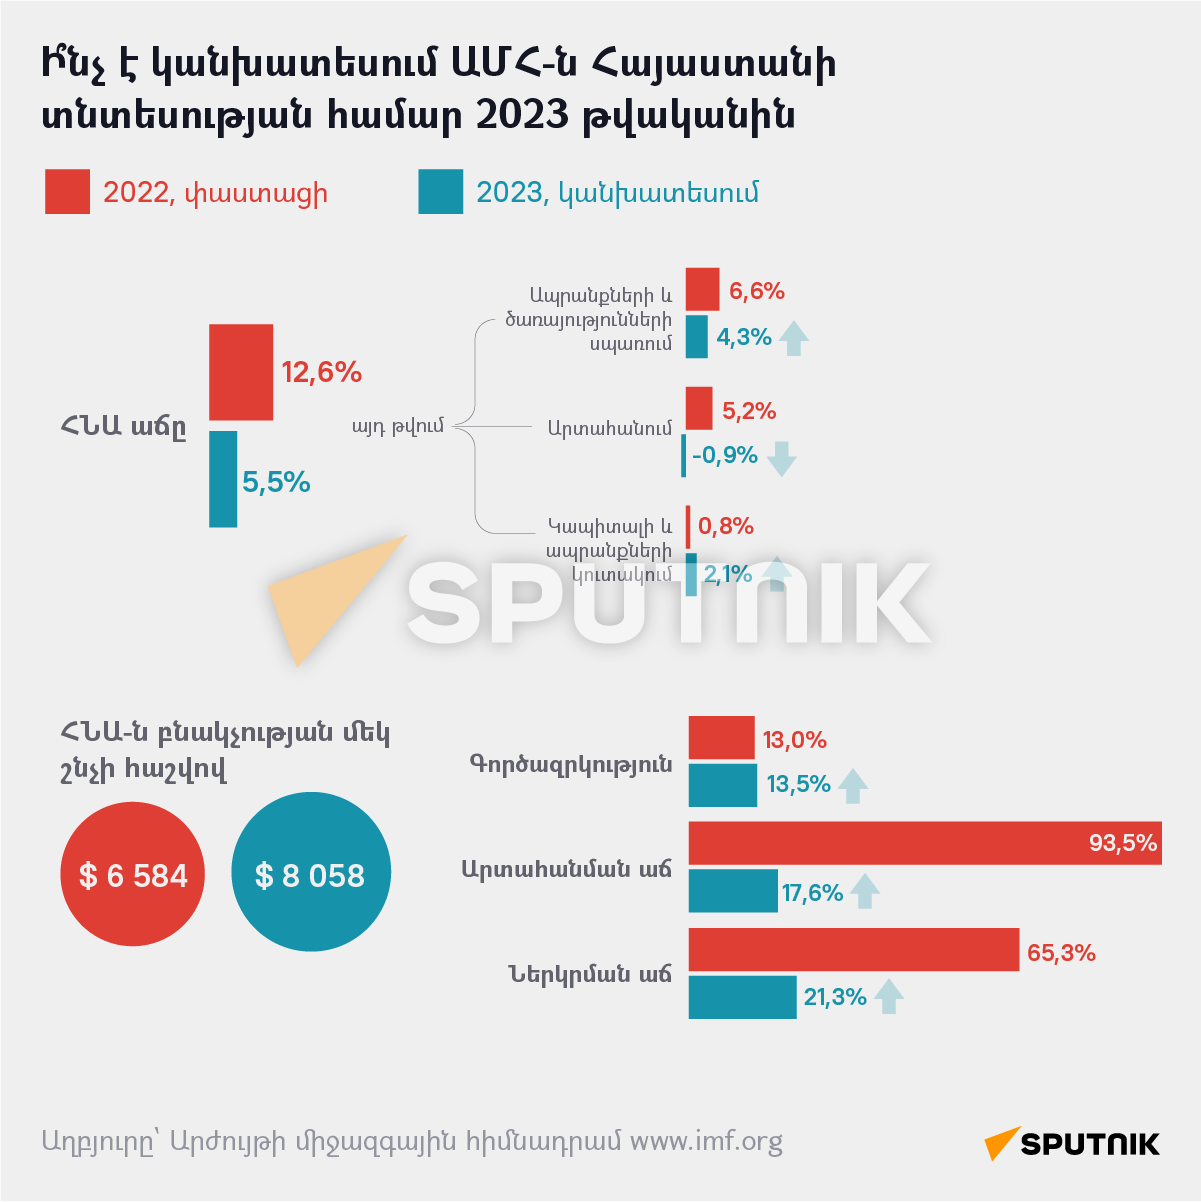 Ի՞նչ է կանխատեսում ԱՄՀ-ն Հայաստանի տնտեսության համար 2023 թվականին - Sputnik Արմենիա